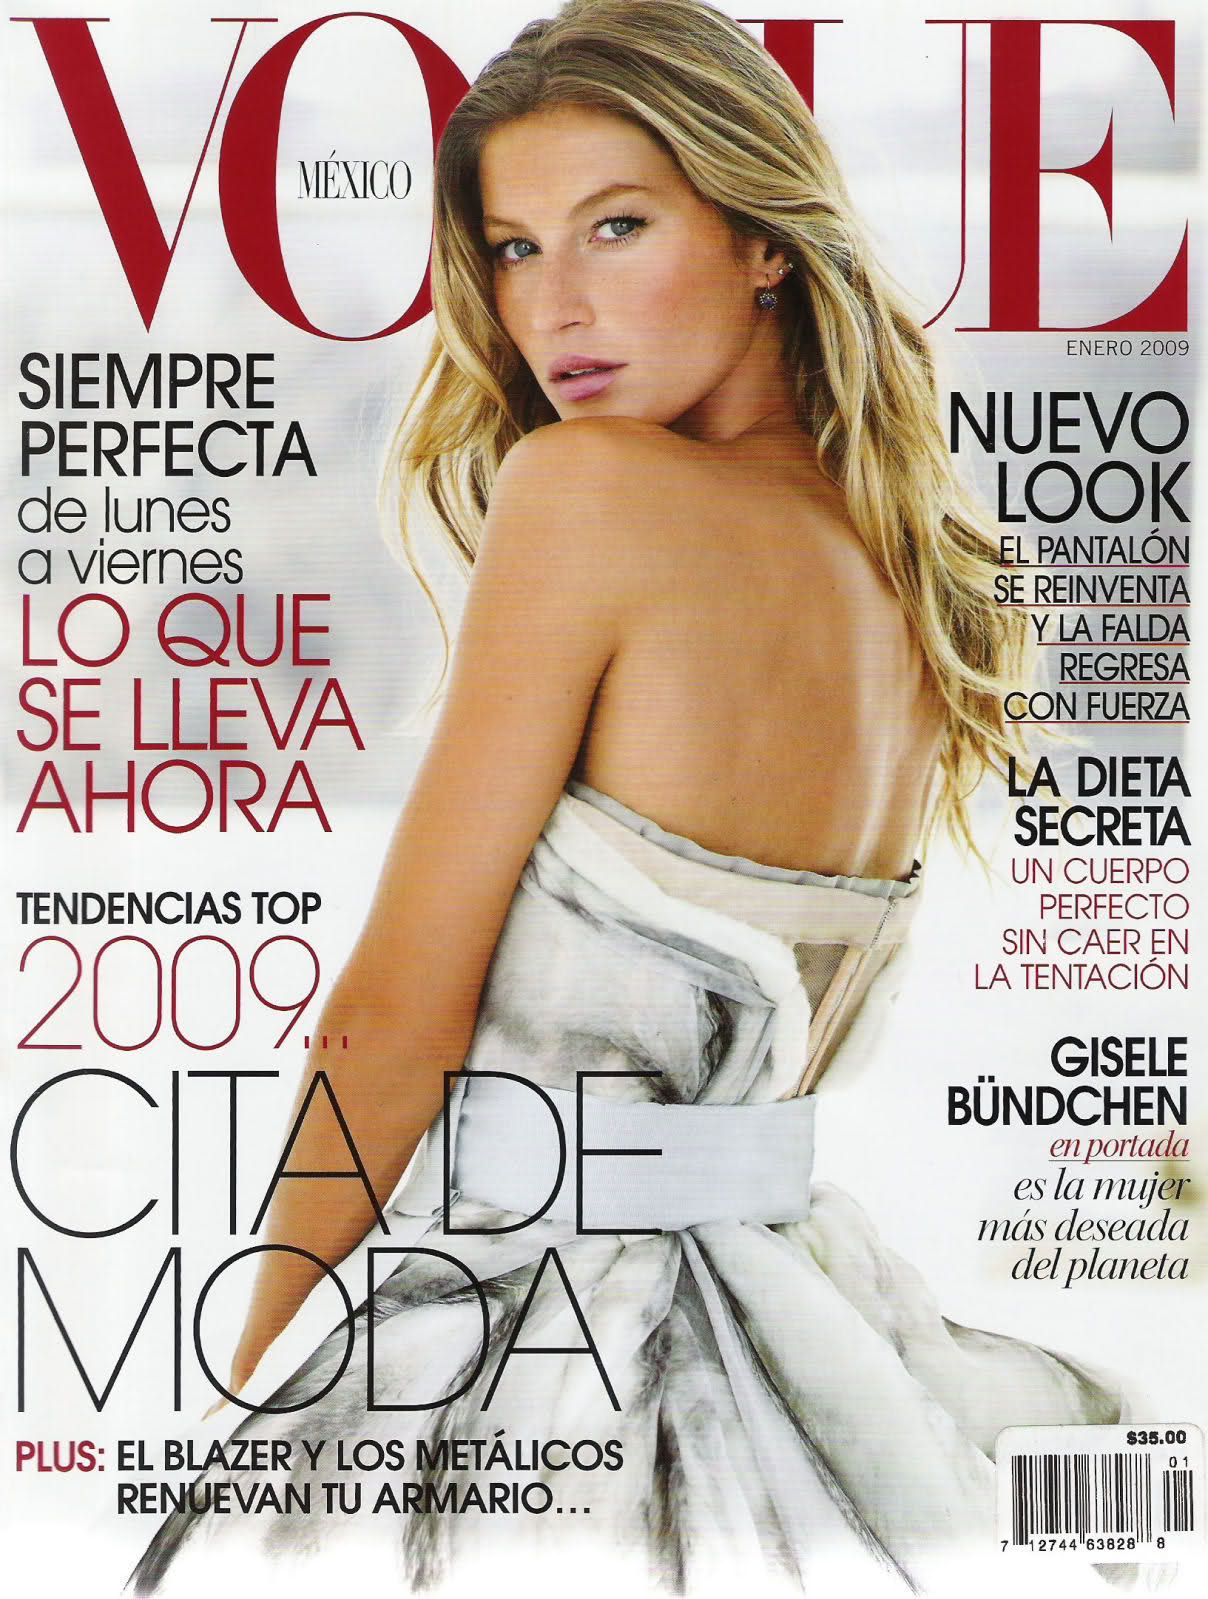 Salt: главное здесь, остальное по вкусу - Обложка журнала Vogue Mexico, январь 2009